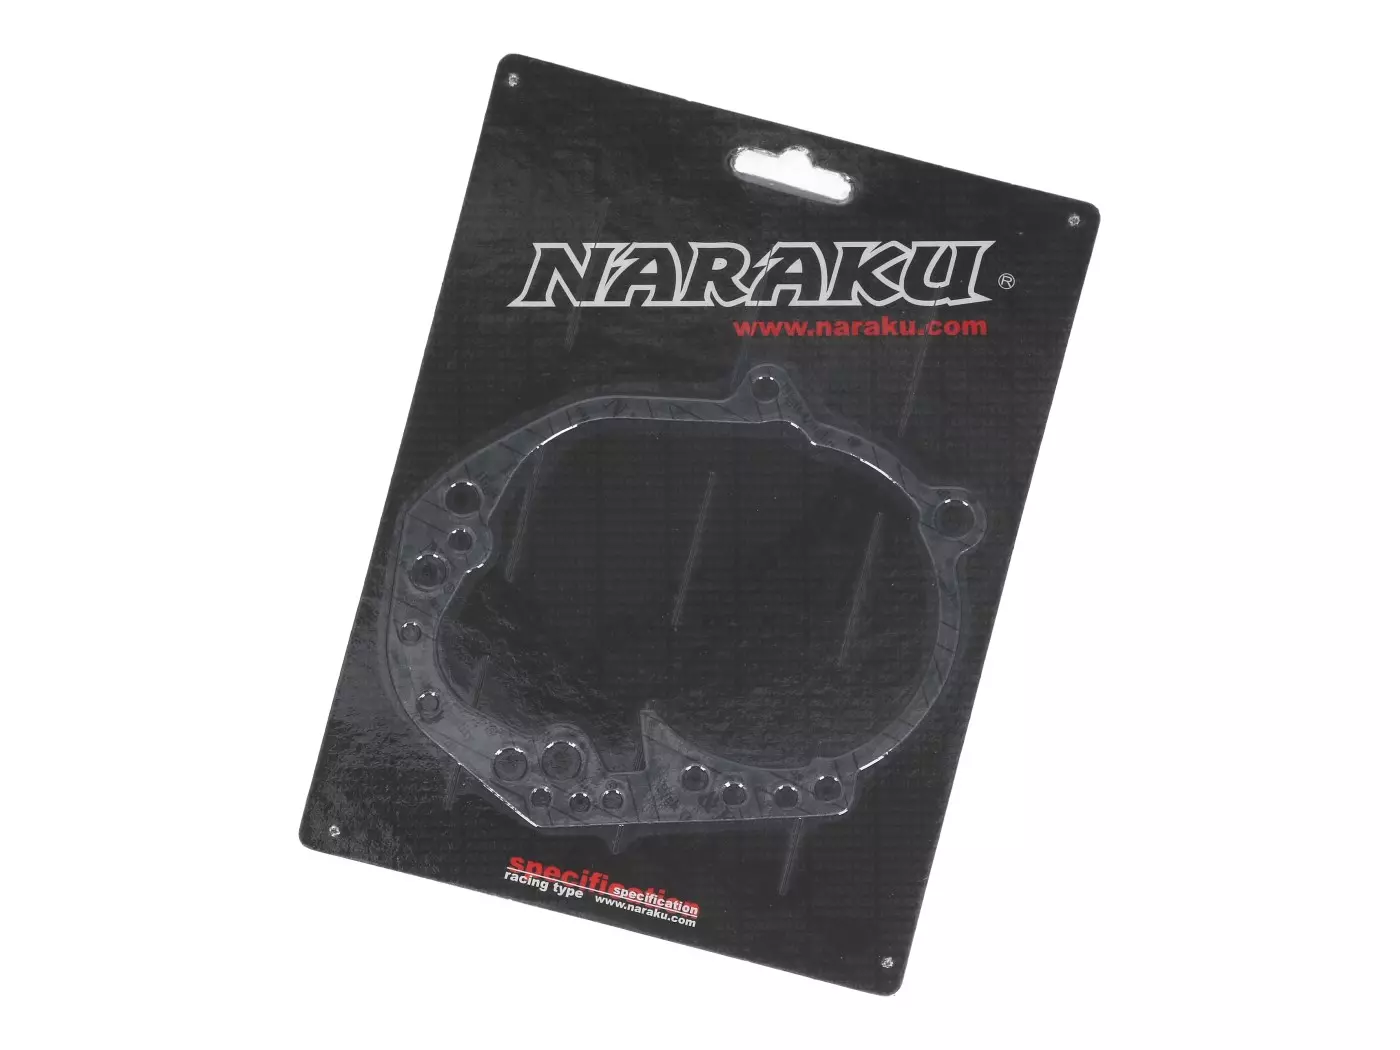 Transmission / Gear Box Cover Gasket Naraku For Peugeot Vertical